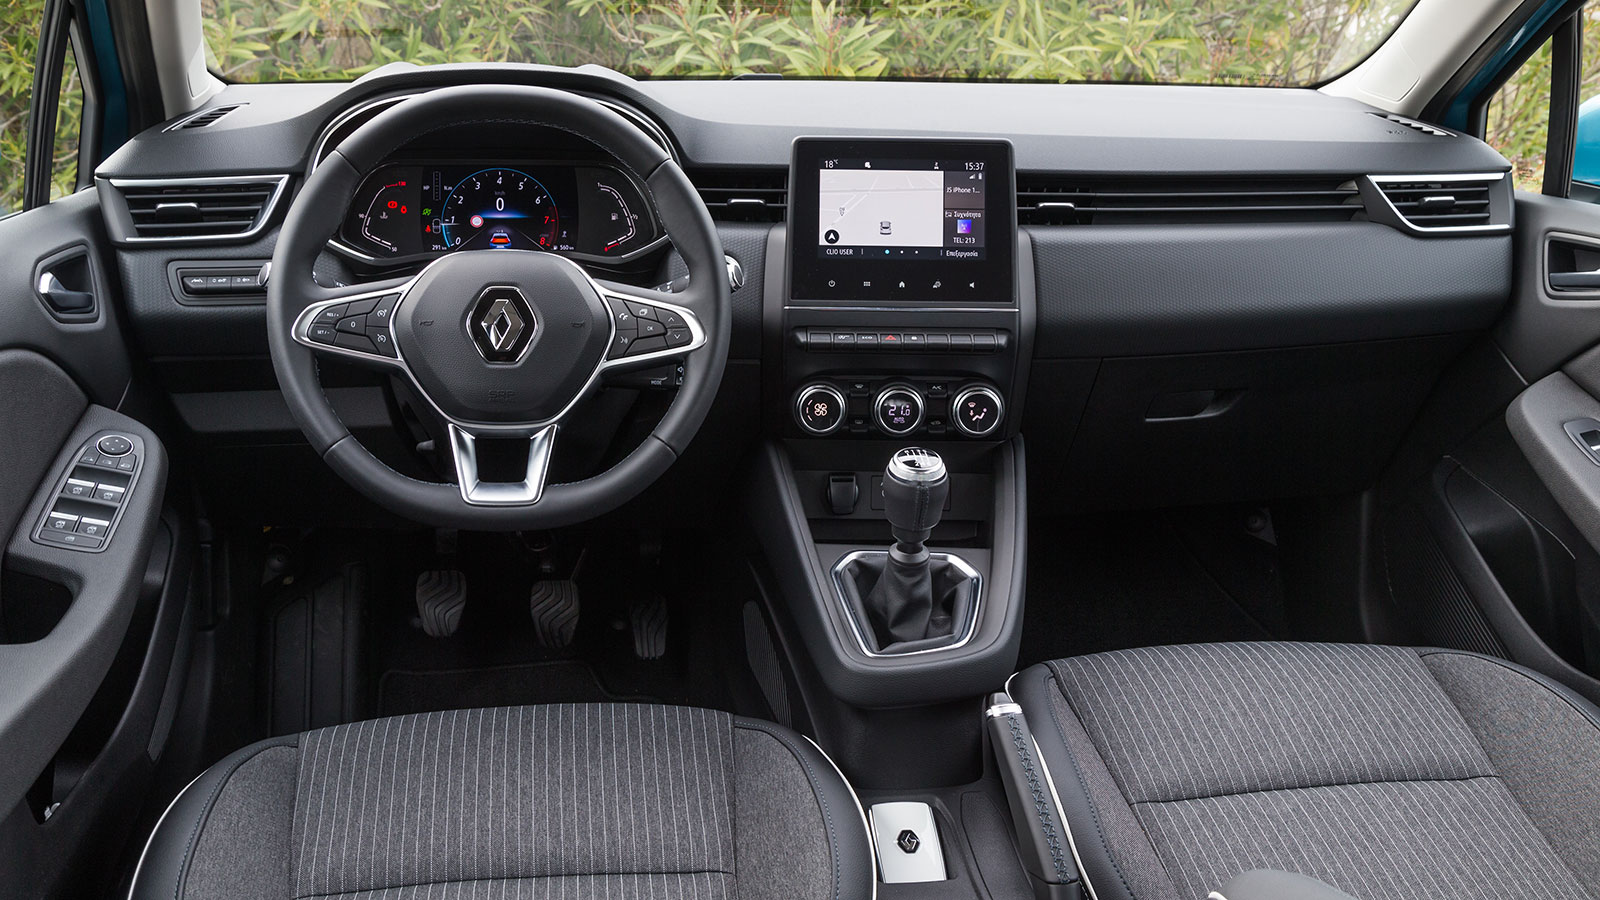 Αποκτήστε το νέο Renault Clio με όφελος έως 2.500 ευρώ 